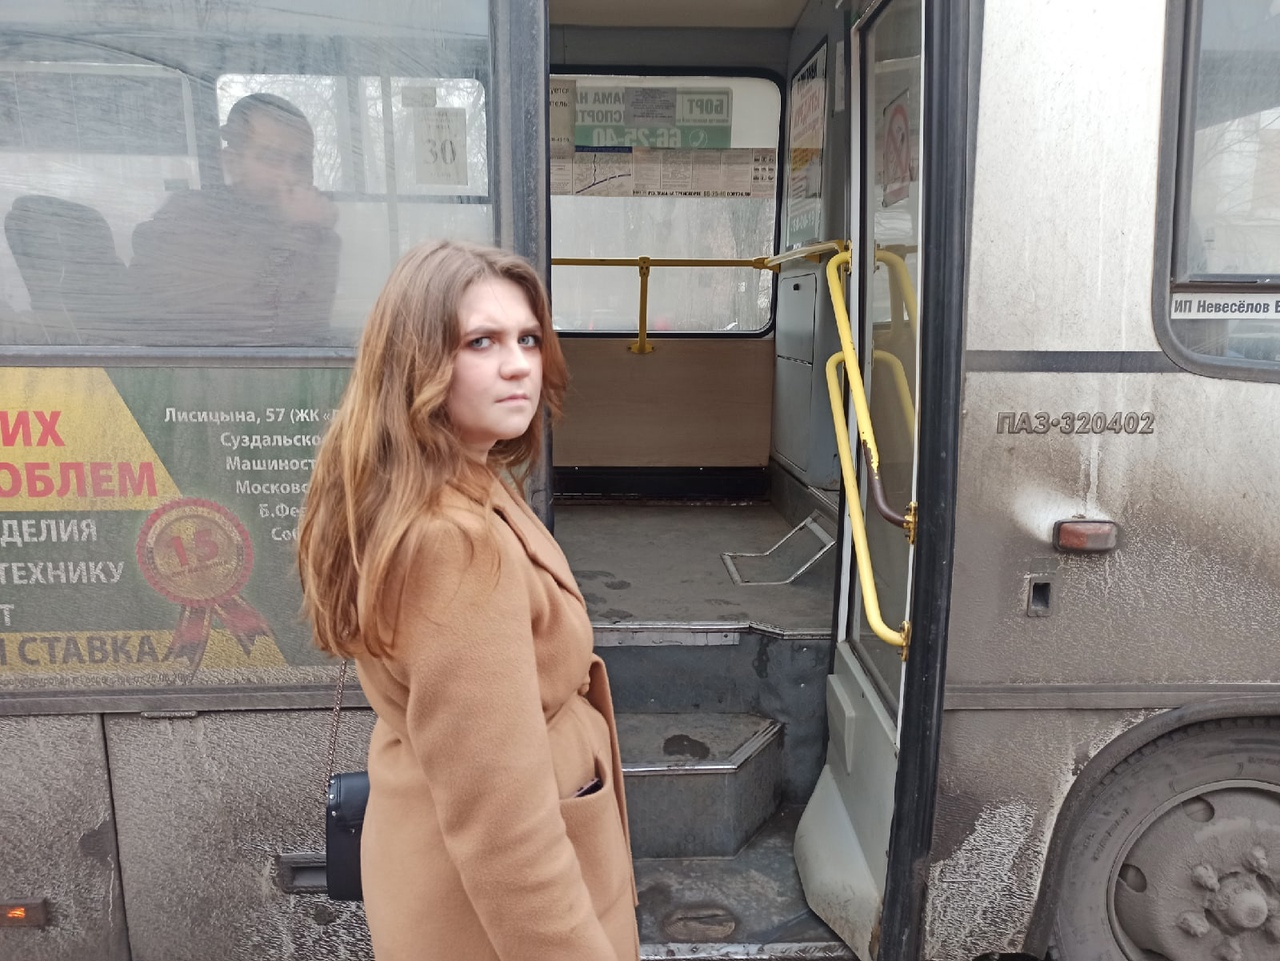 "Ухудшаете положение пассажиров": жительница Ярославля провела эксперимент с маршрутками